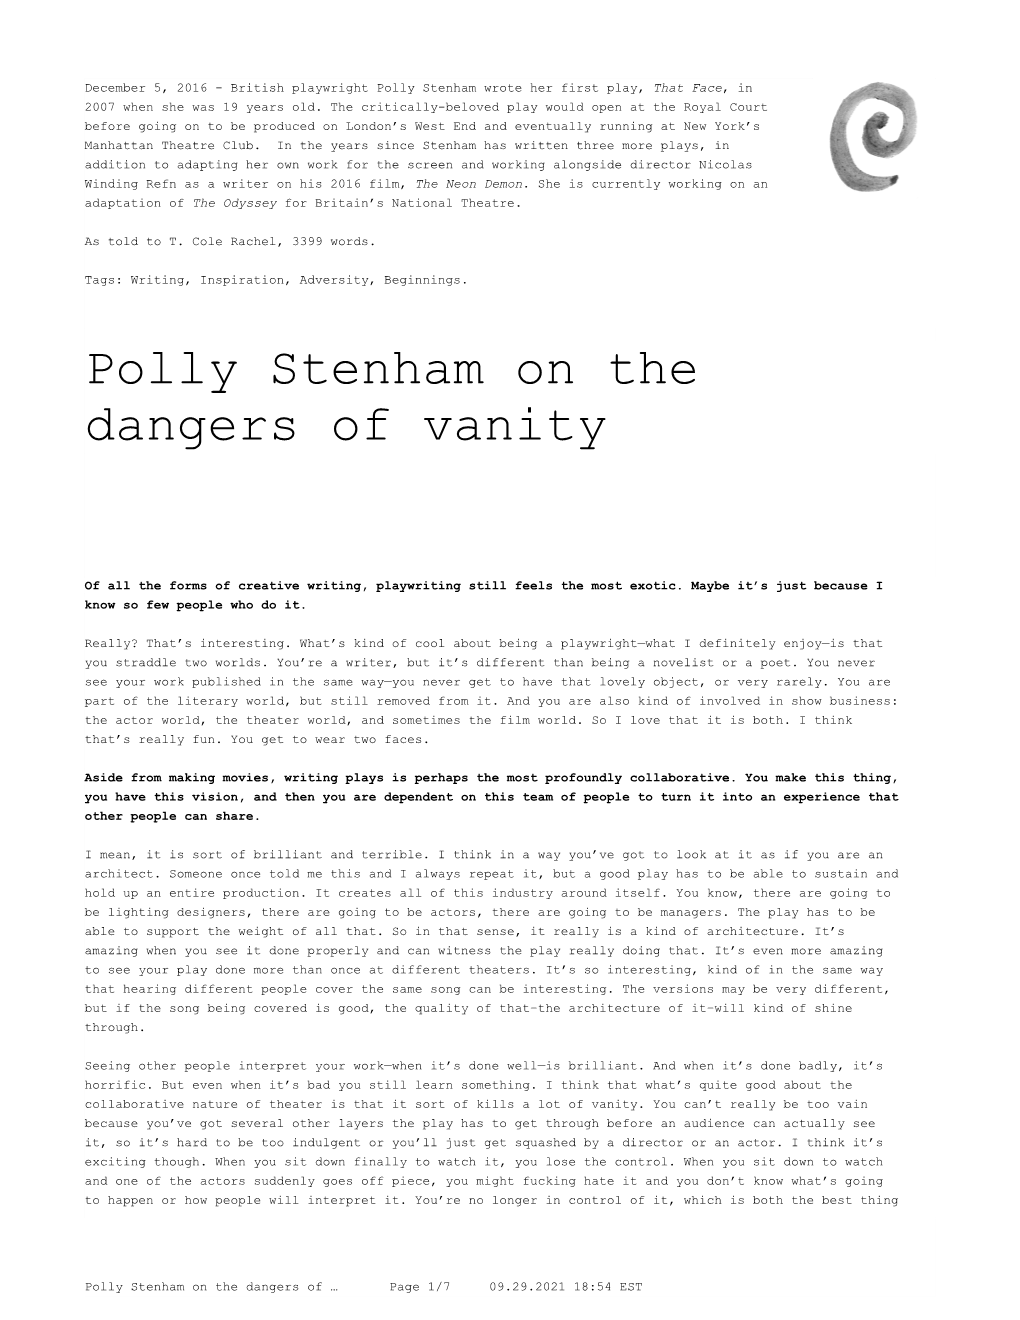 Polly Stenham on the Dangers of Vanity